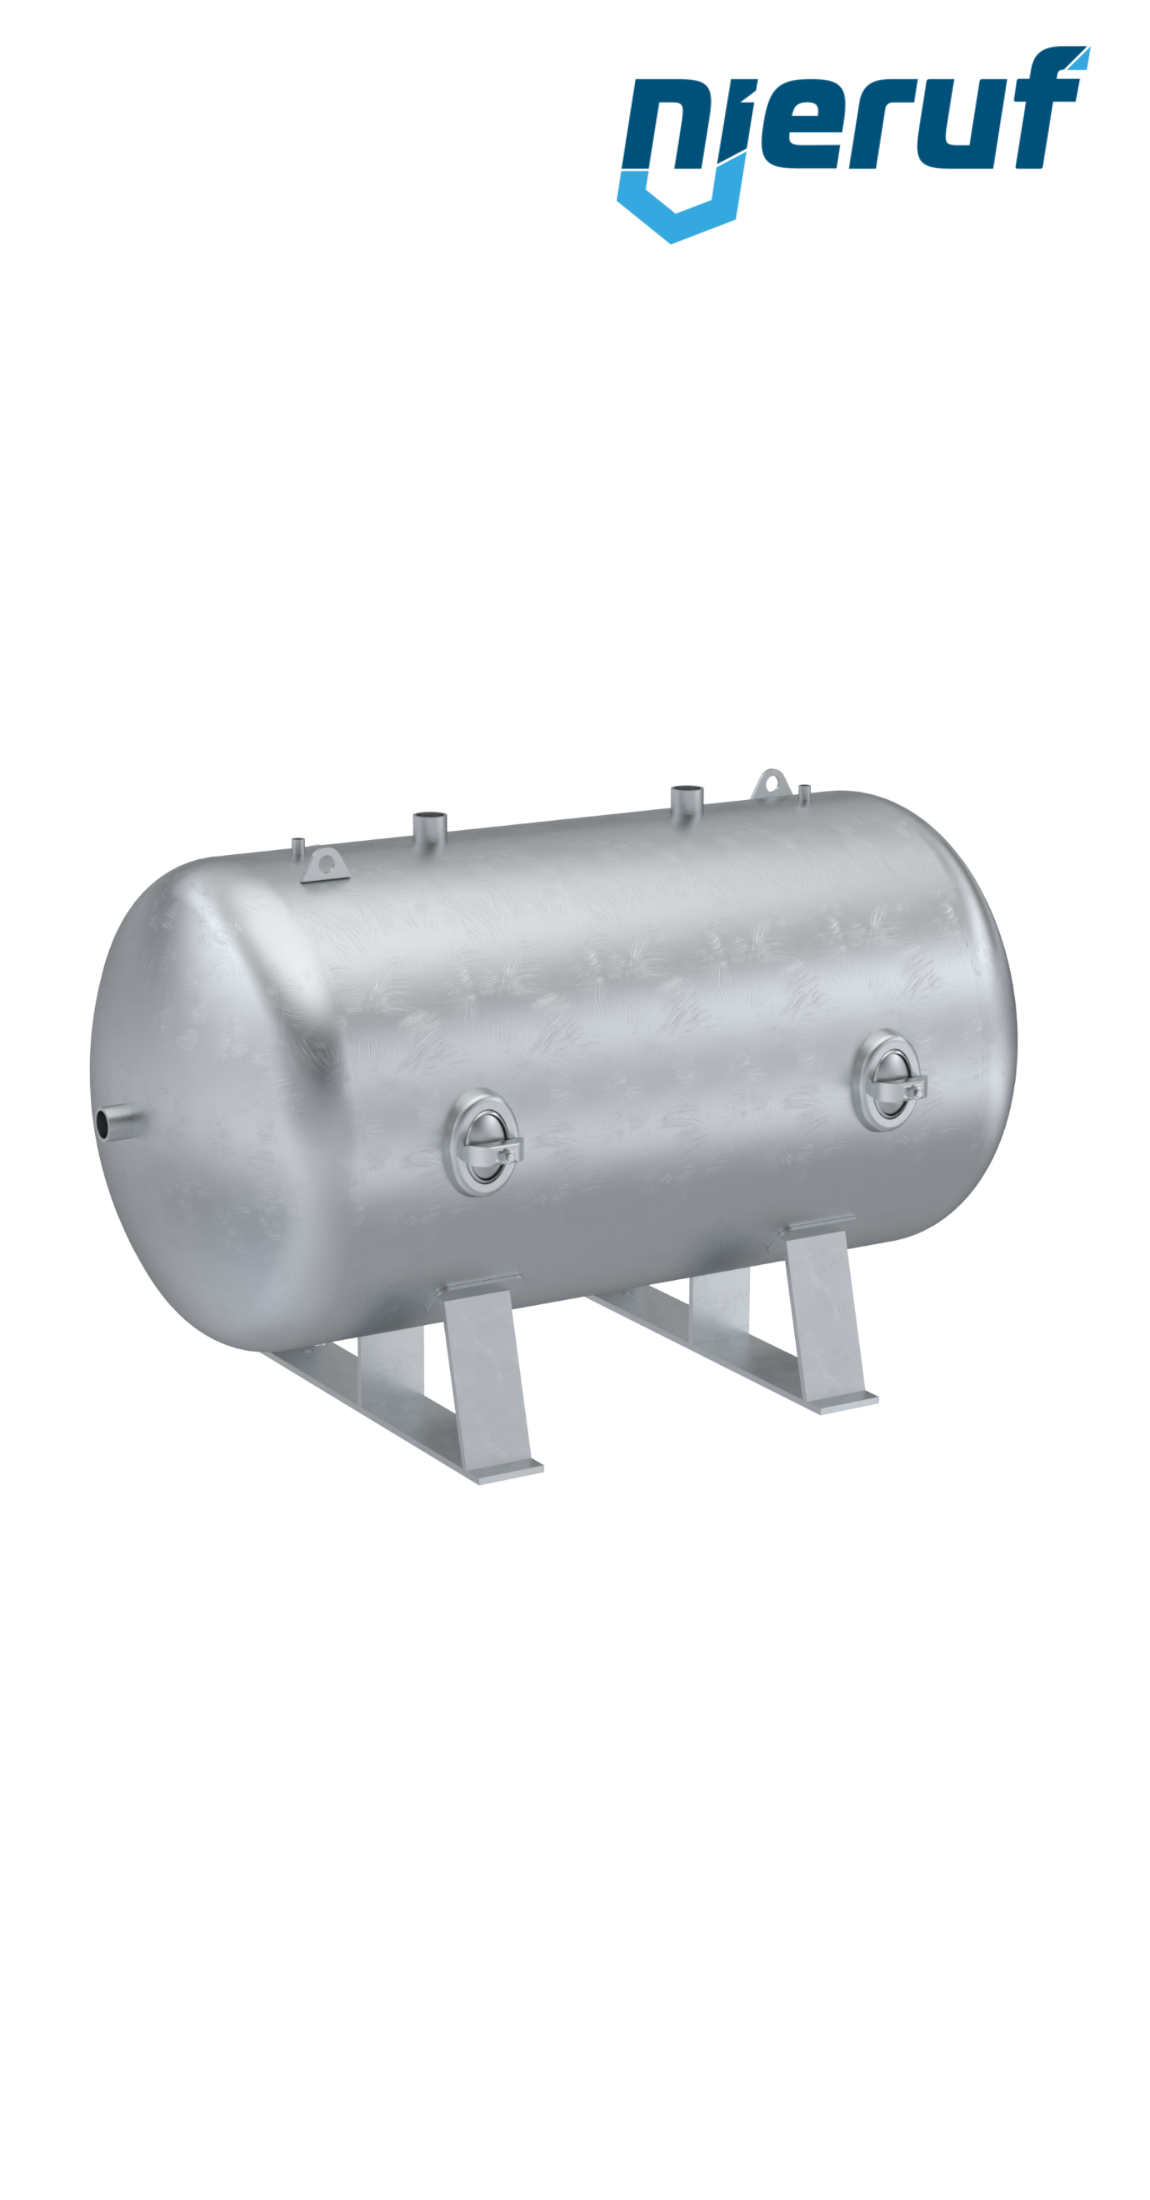 Serbatoi per alta pressione orizzontale BE02 2000 litri, 0-23 bar, acciaio zincato